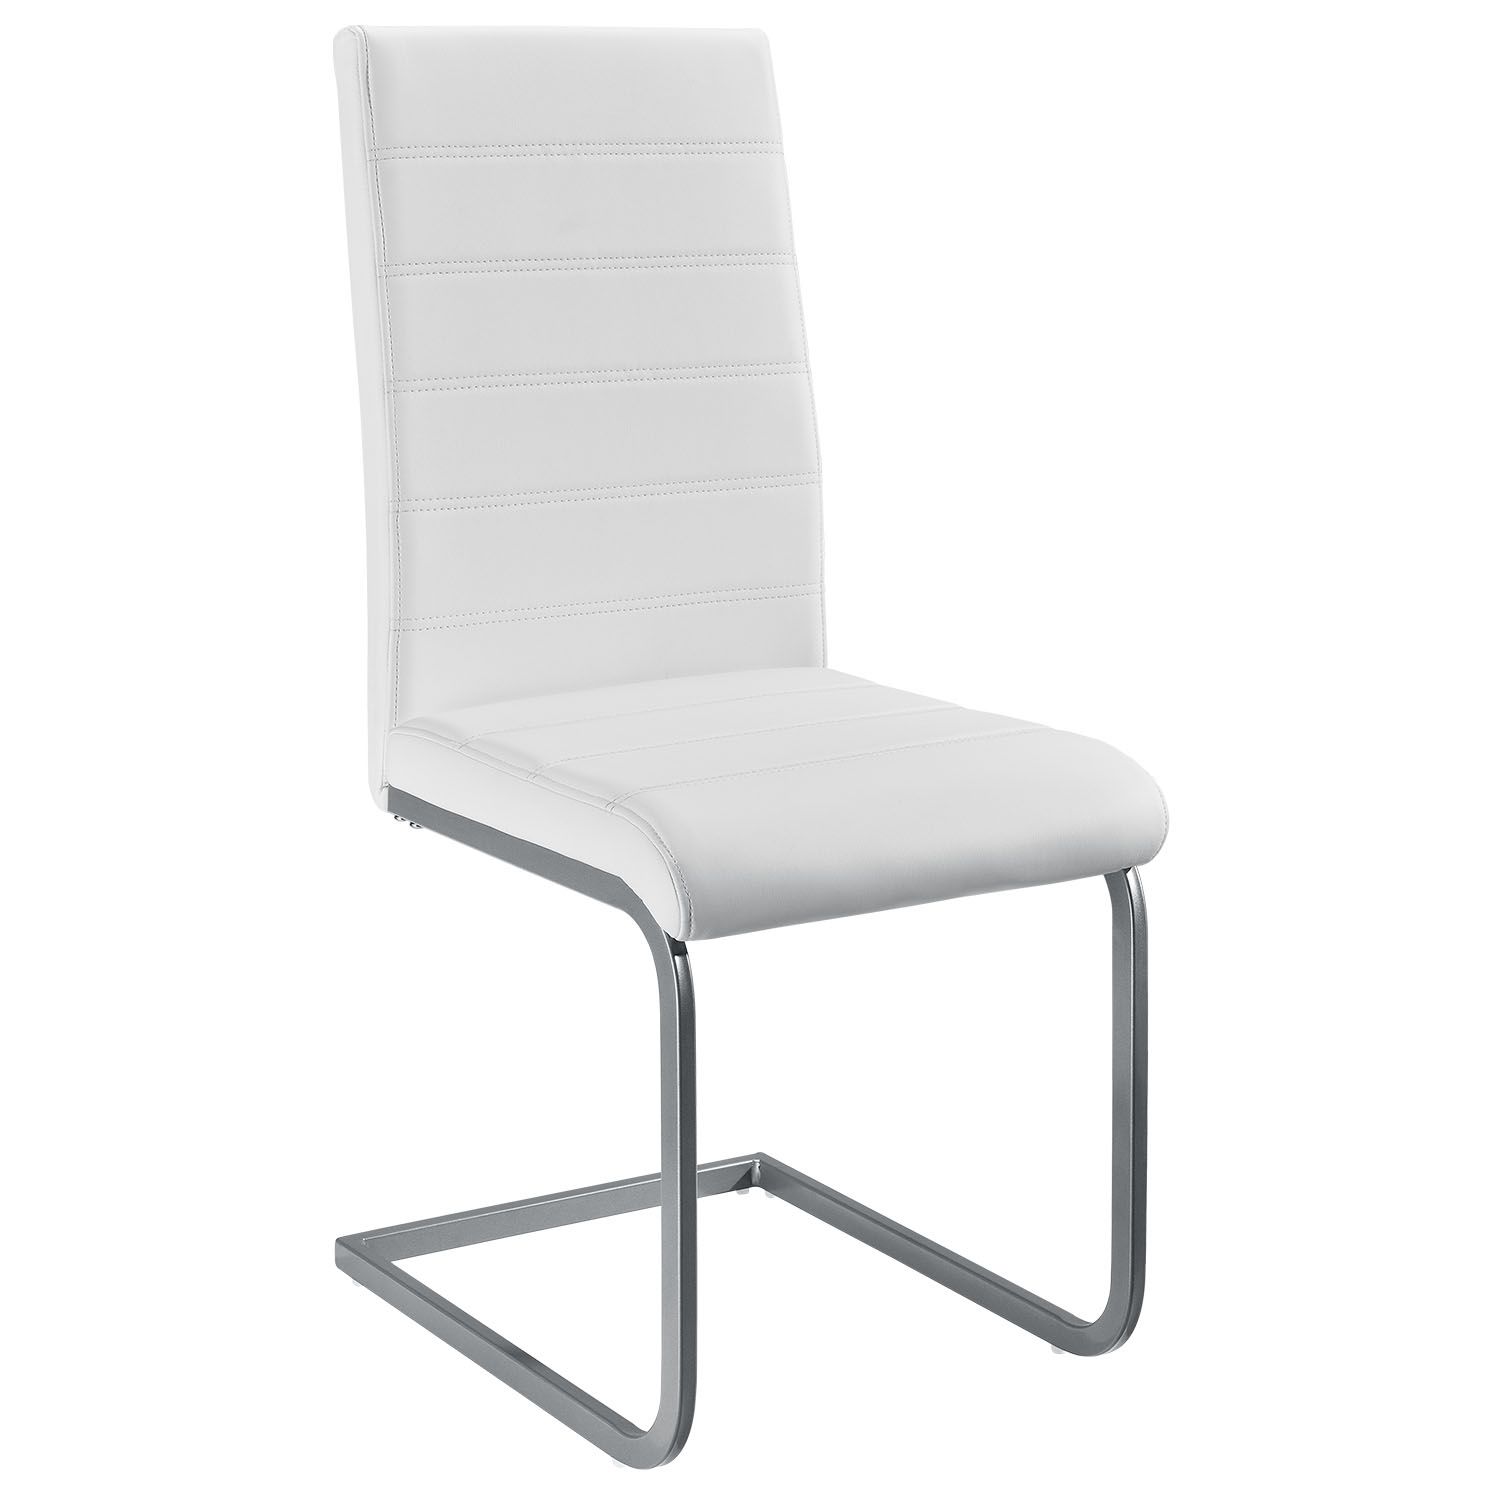 Juskys Konzolová židle  Vegas sada 4 kusů, syntetická kůže, v bílé barvě